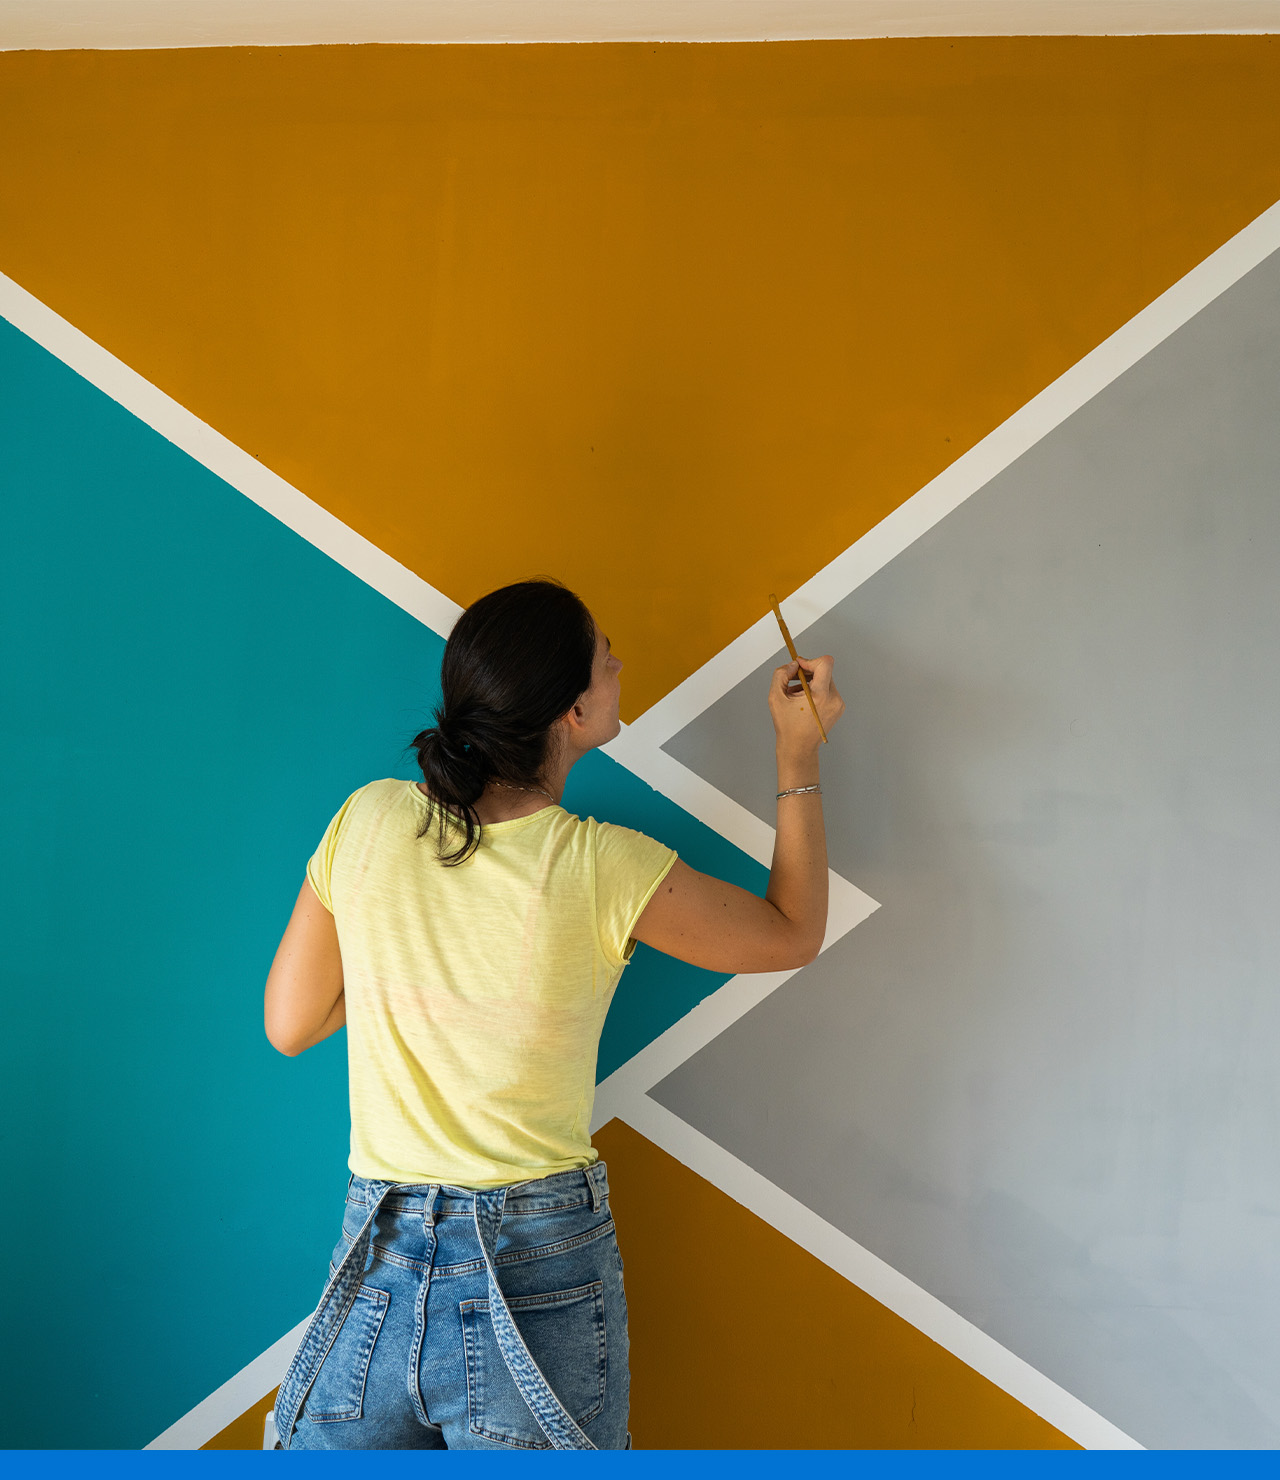 Aprende a pintar murales en las paredes y transforma tu hogar en